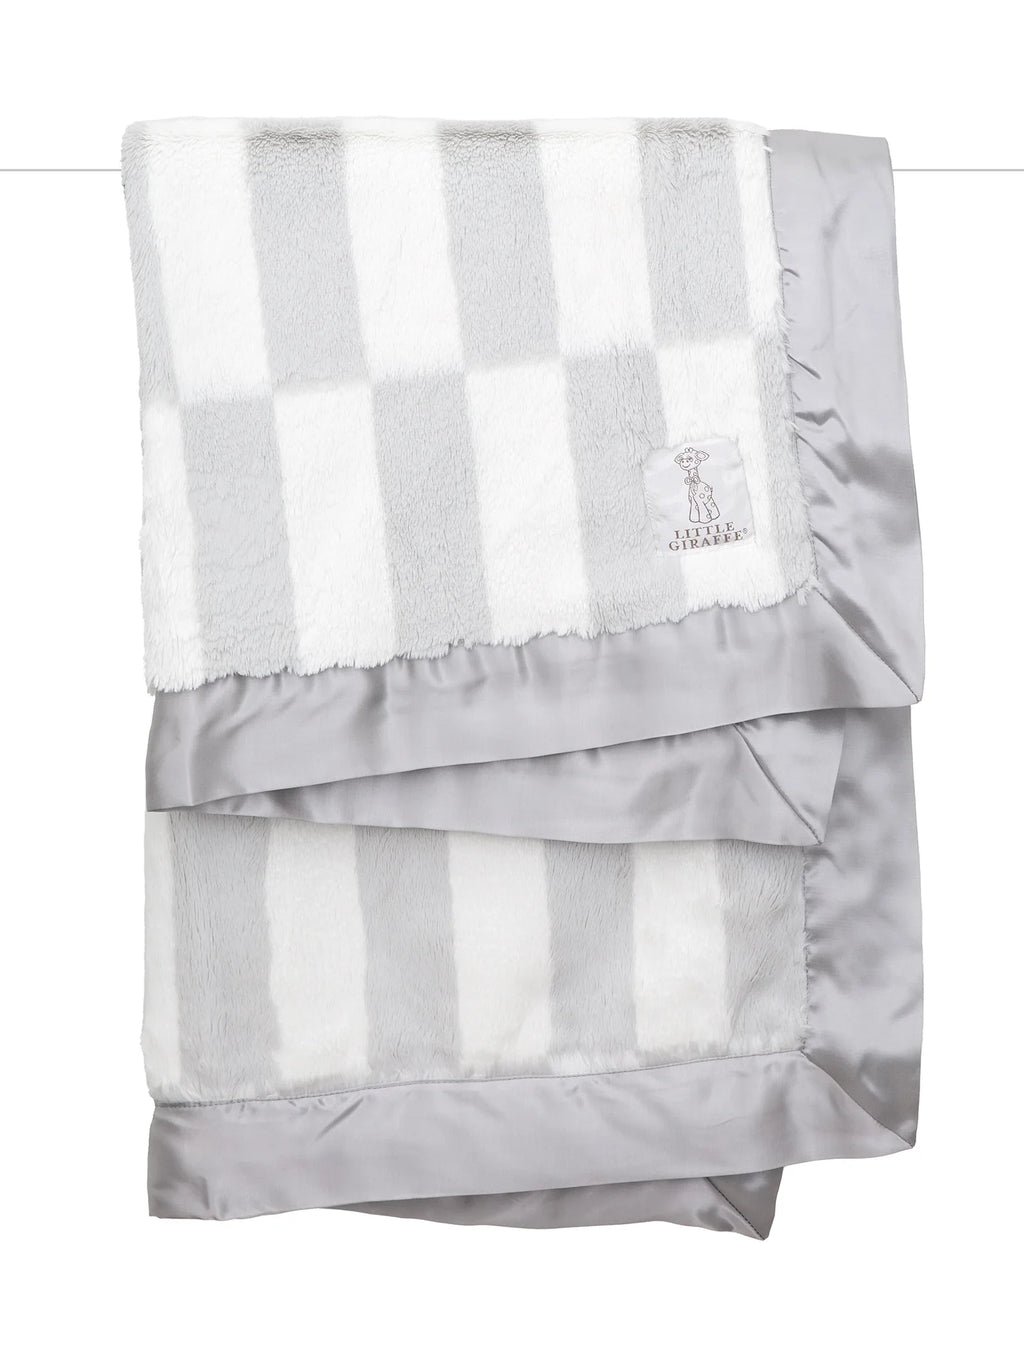 Luxe Blanket || Windchime Silver